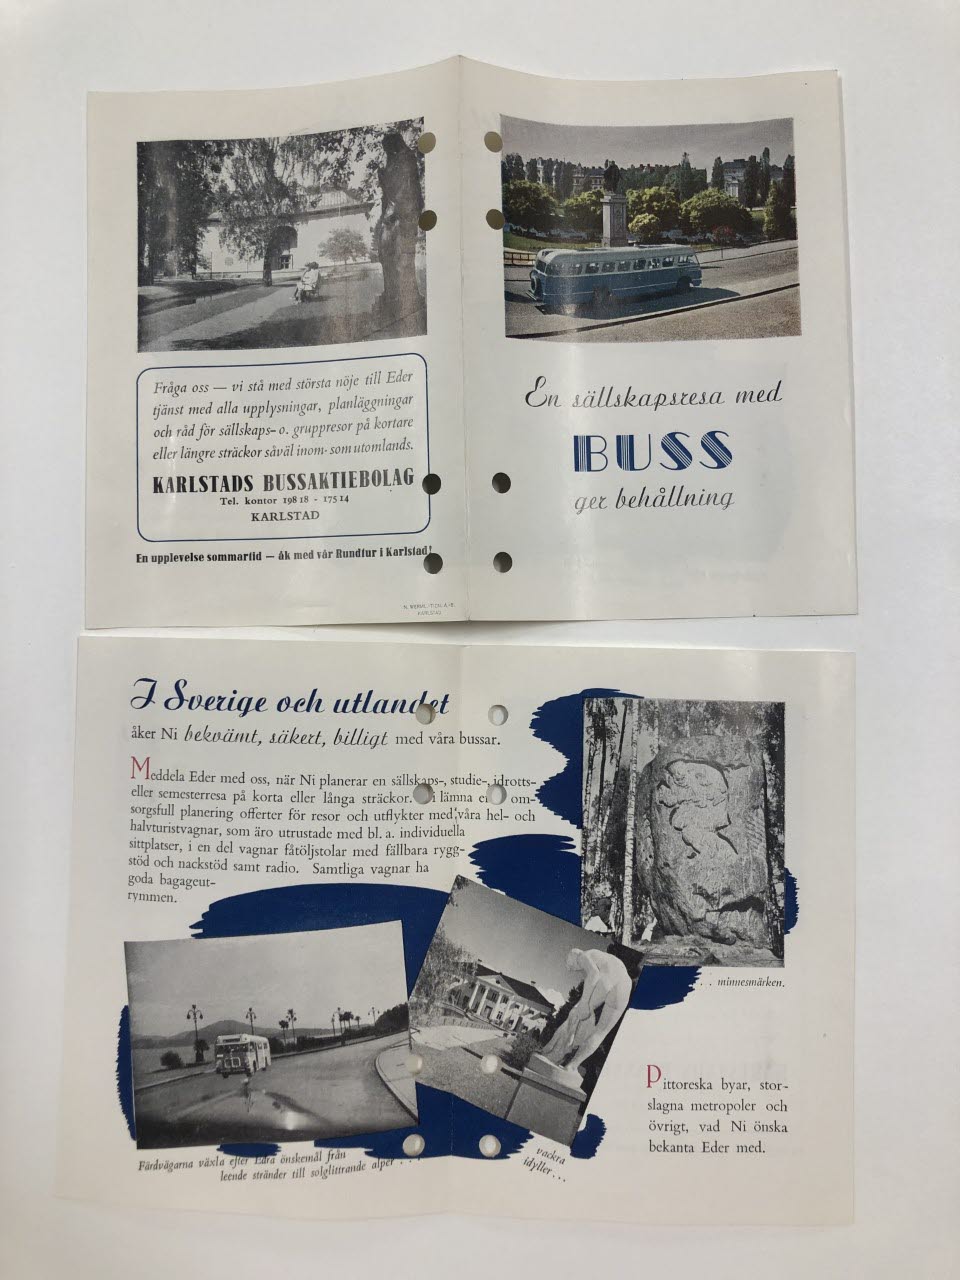 Broschyr över beställningsresor 1955, Karlstads bussaktiebolag. Gick att beställa sällskapsresor både inom och utanför Sverige